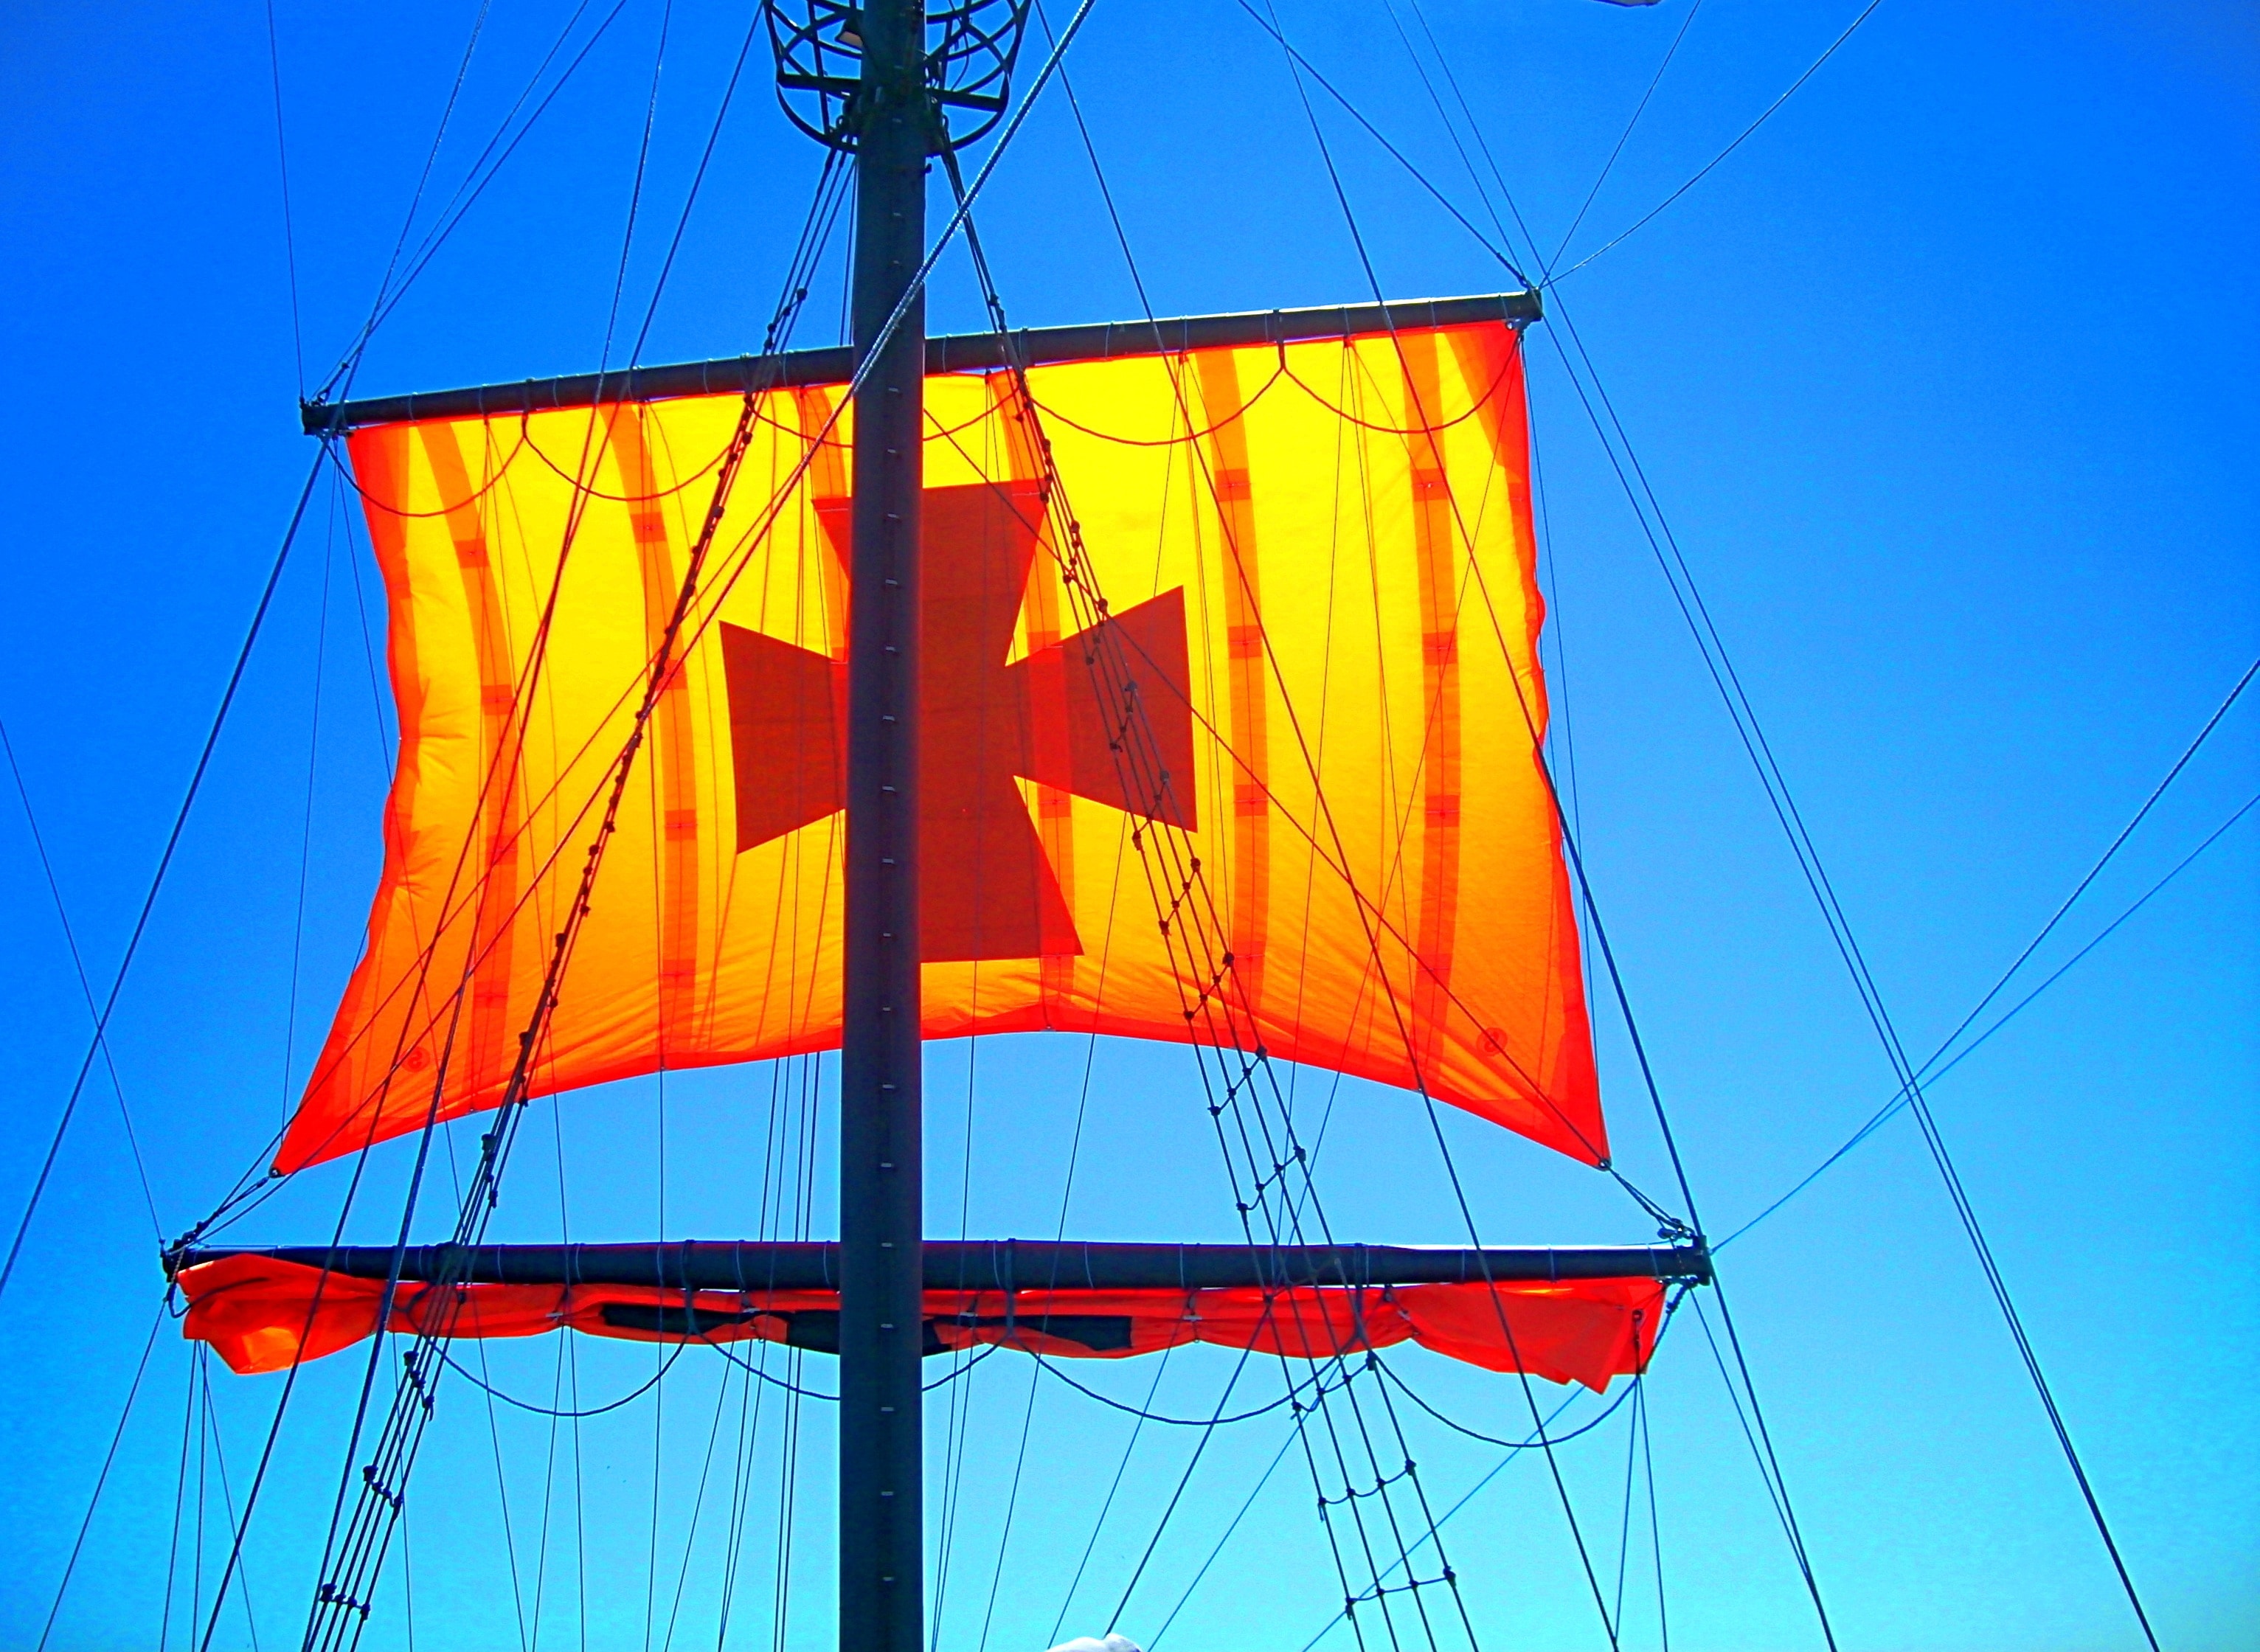 brown cross printed boat sailings